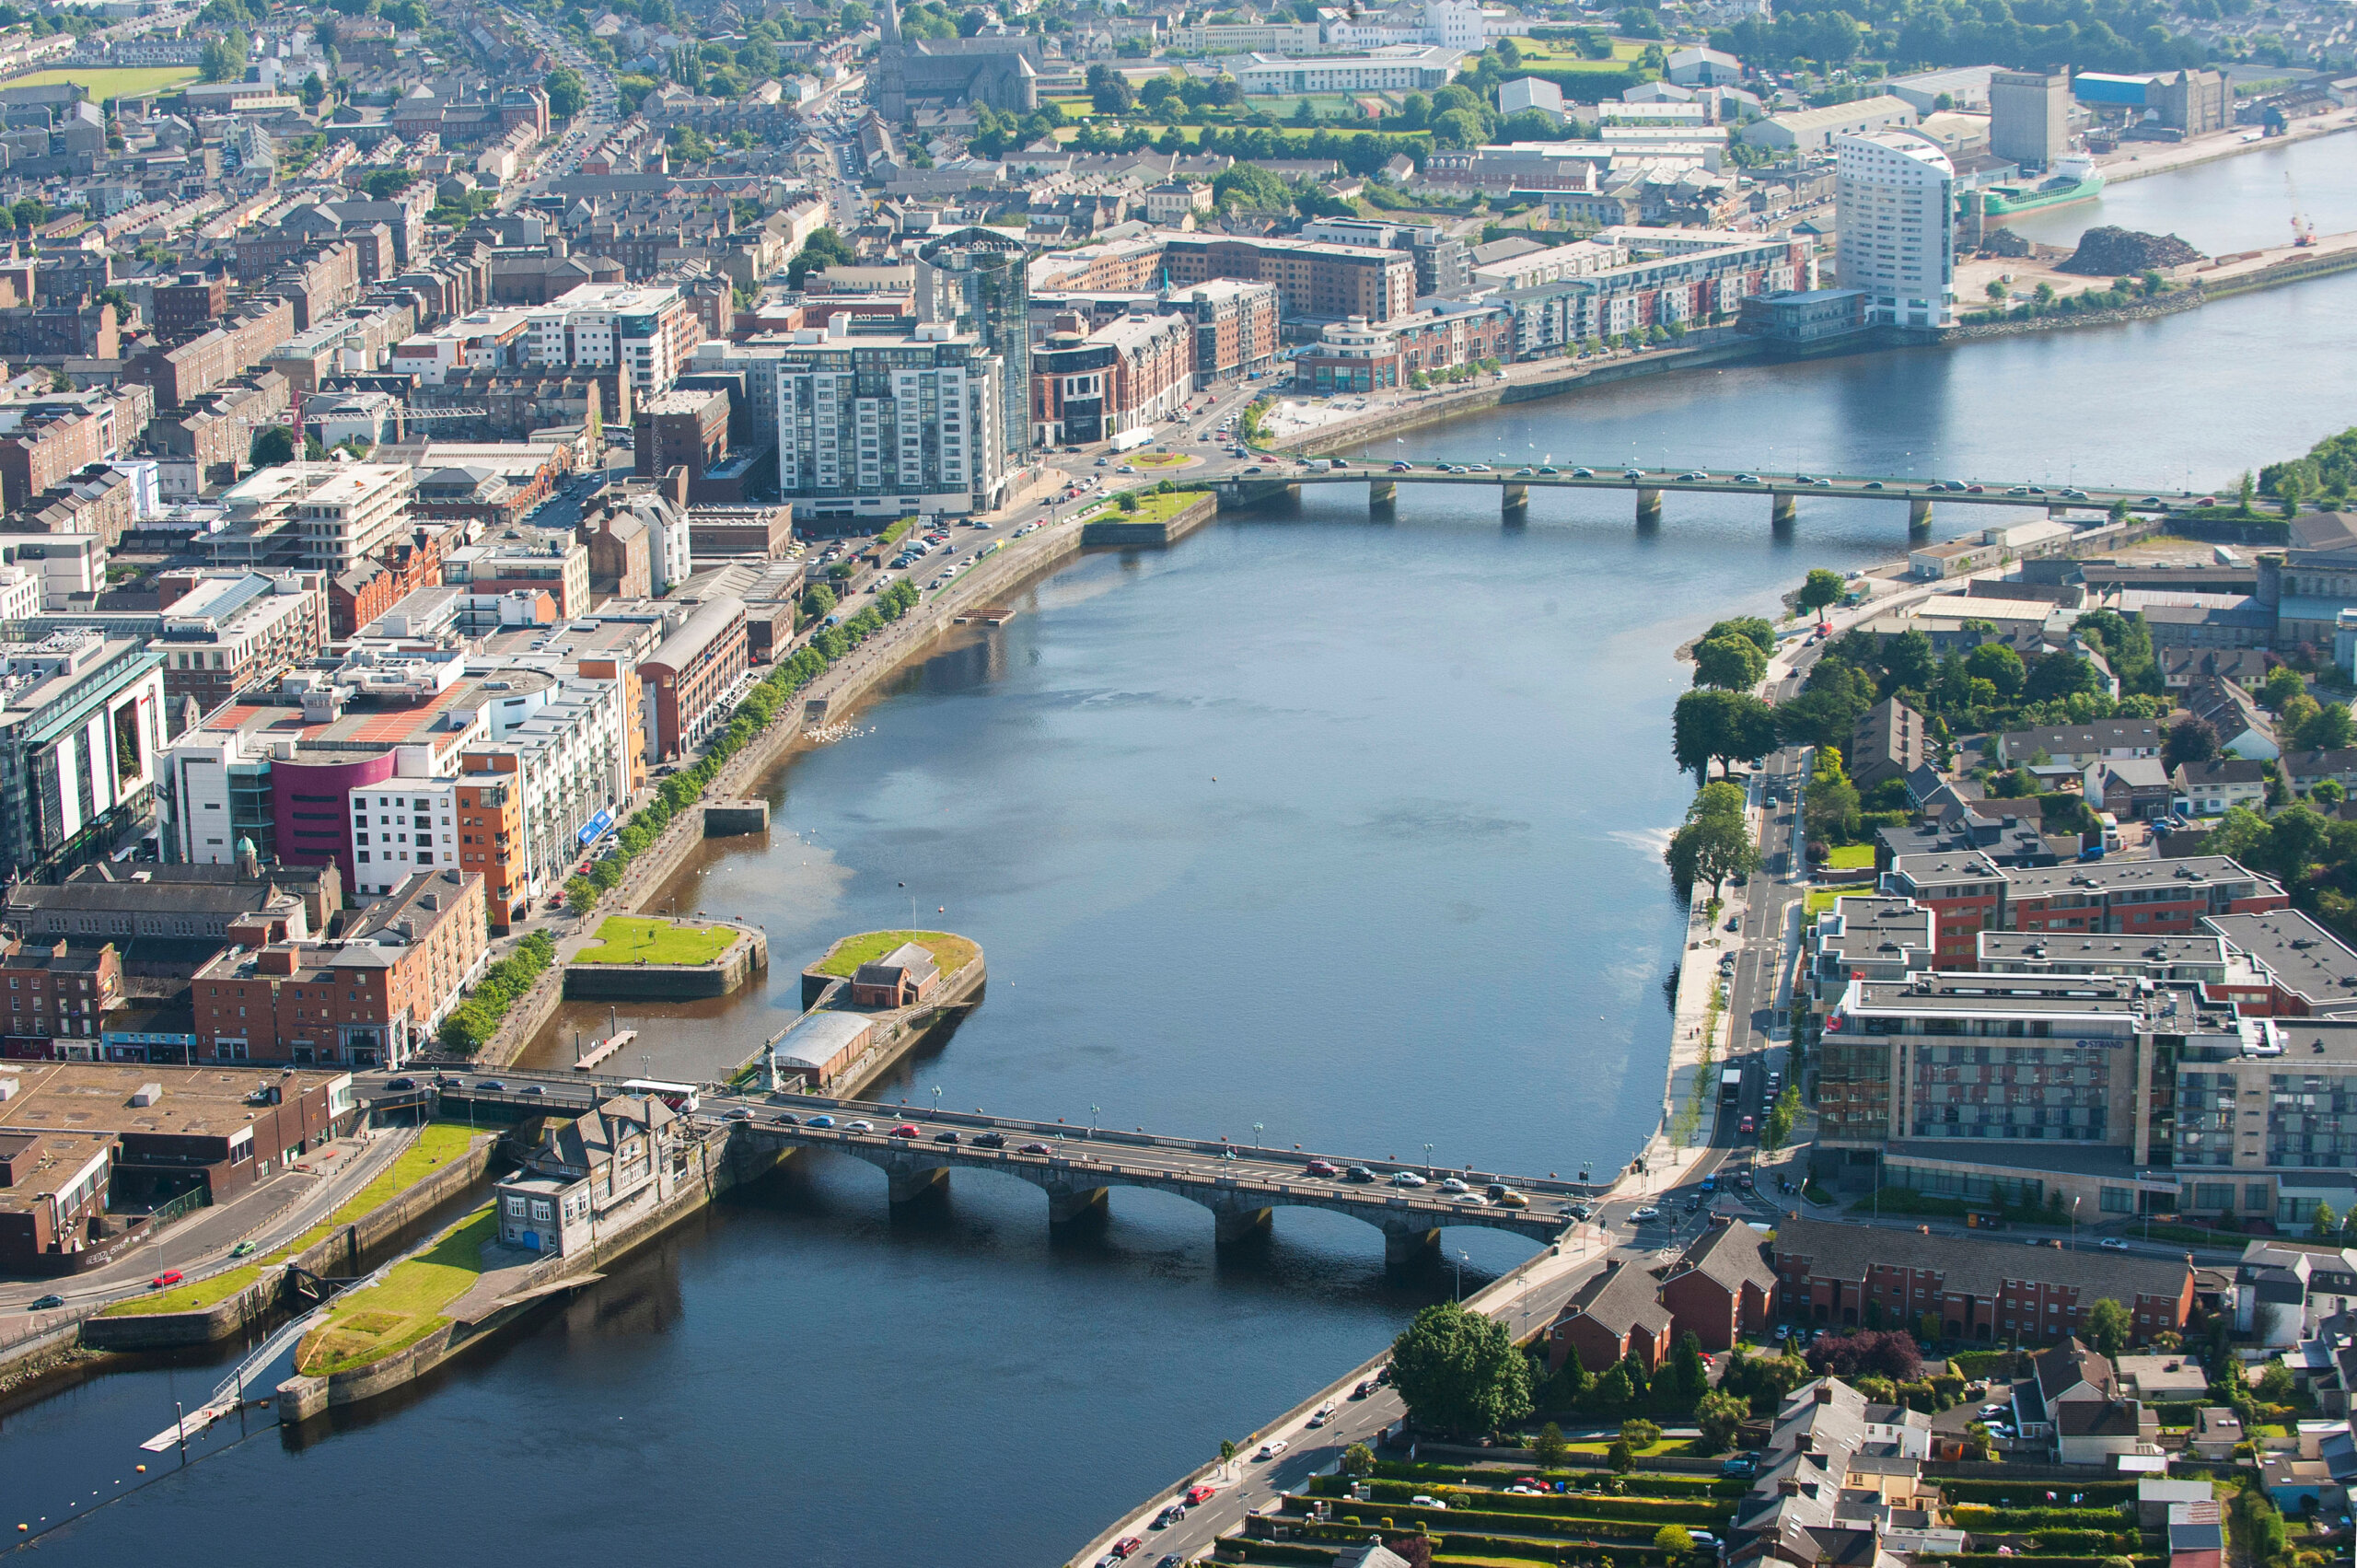 Widok z lotu ptaka na miasto Limerick, Irlandia, czerwiec 2009.